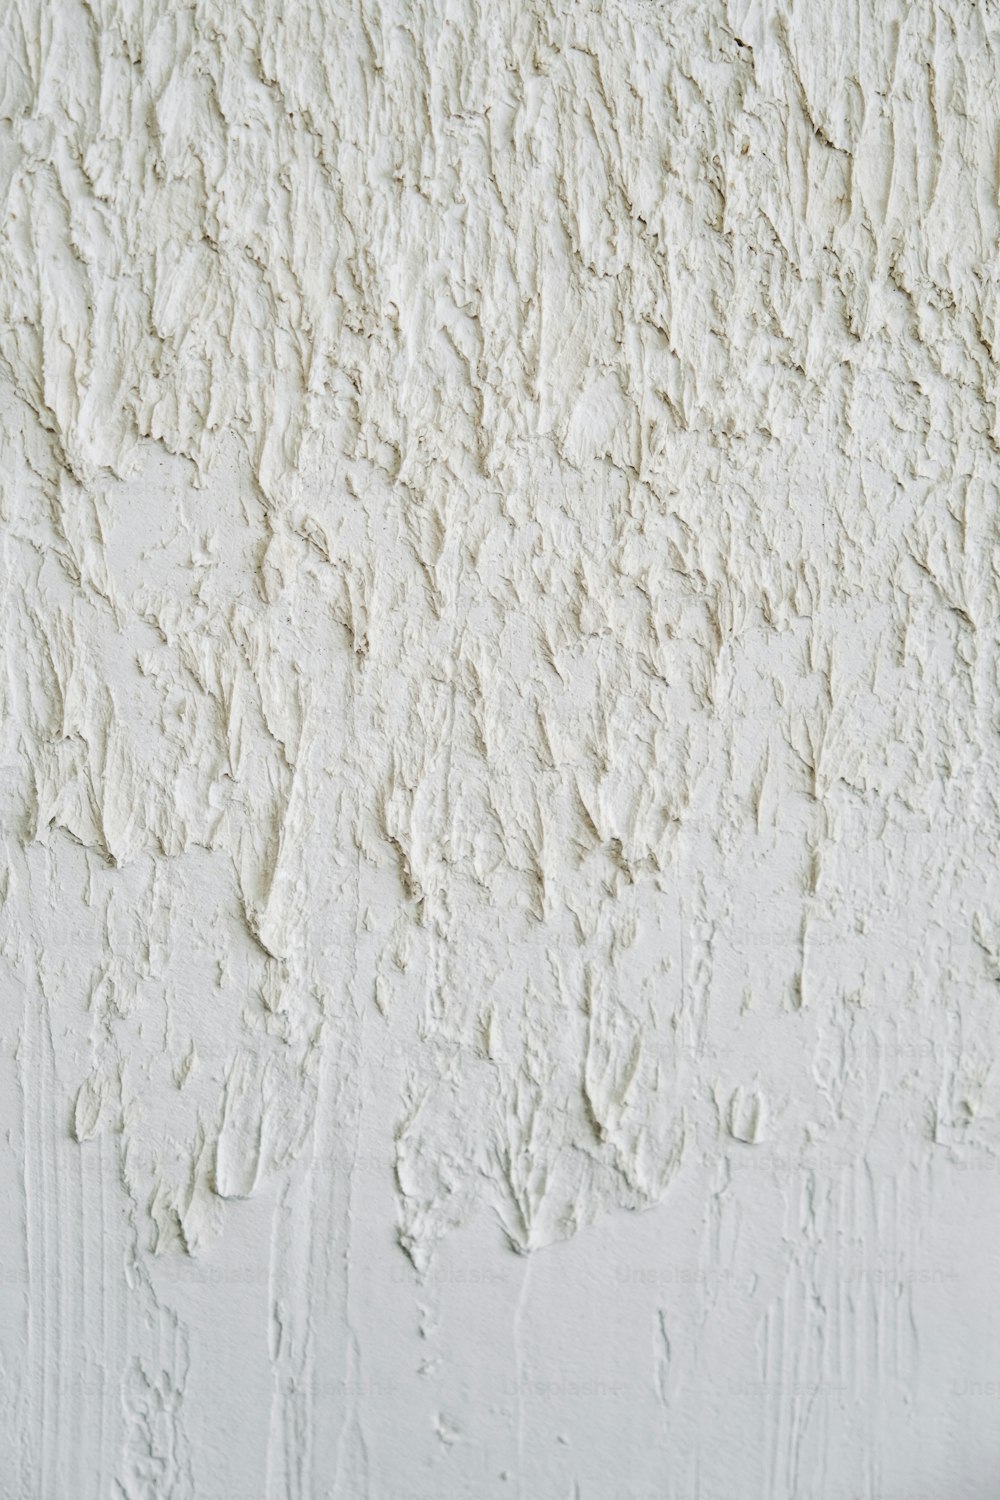 白いペンキの壁の接写